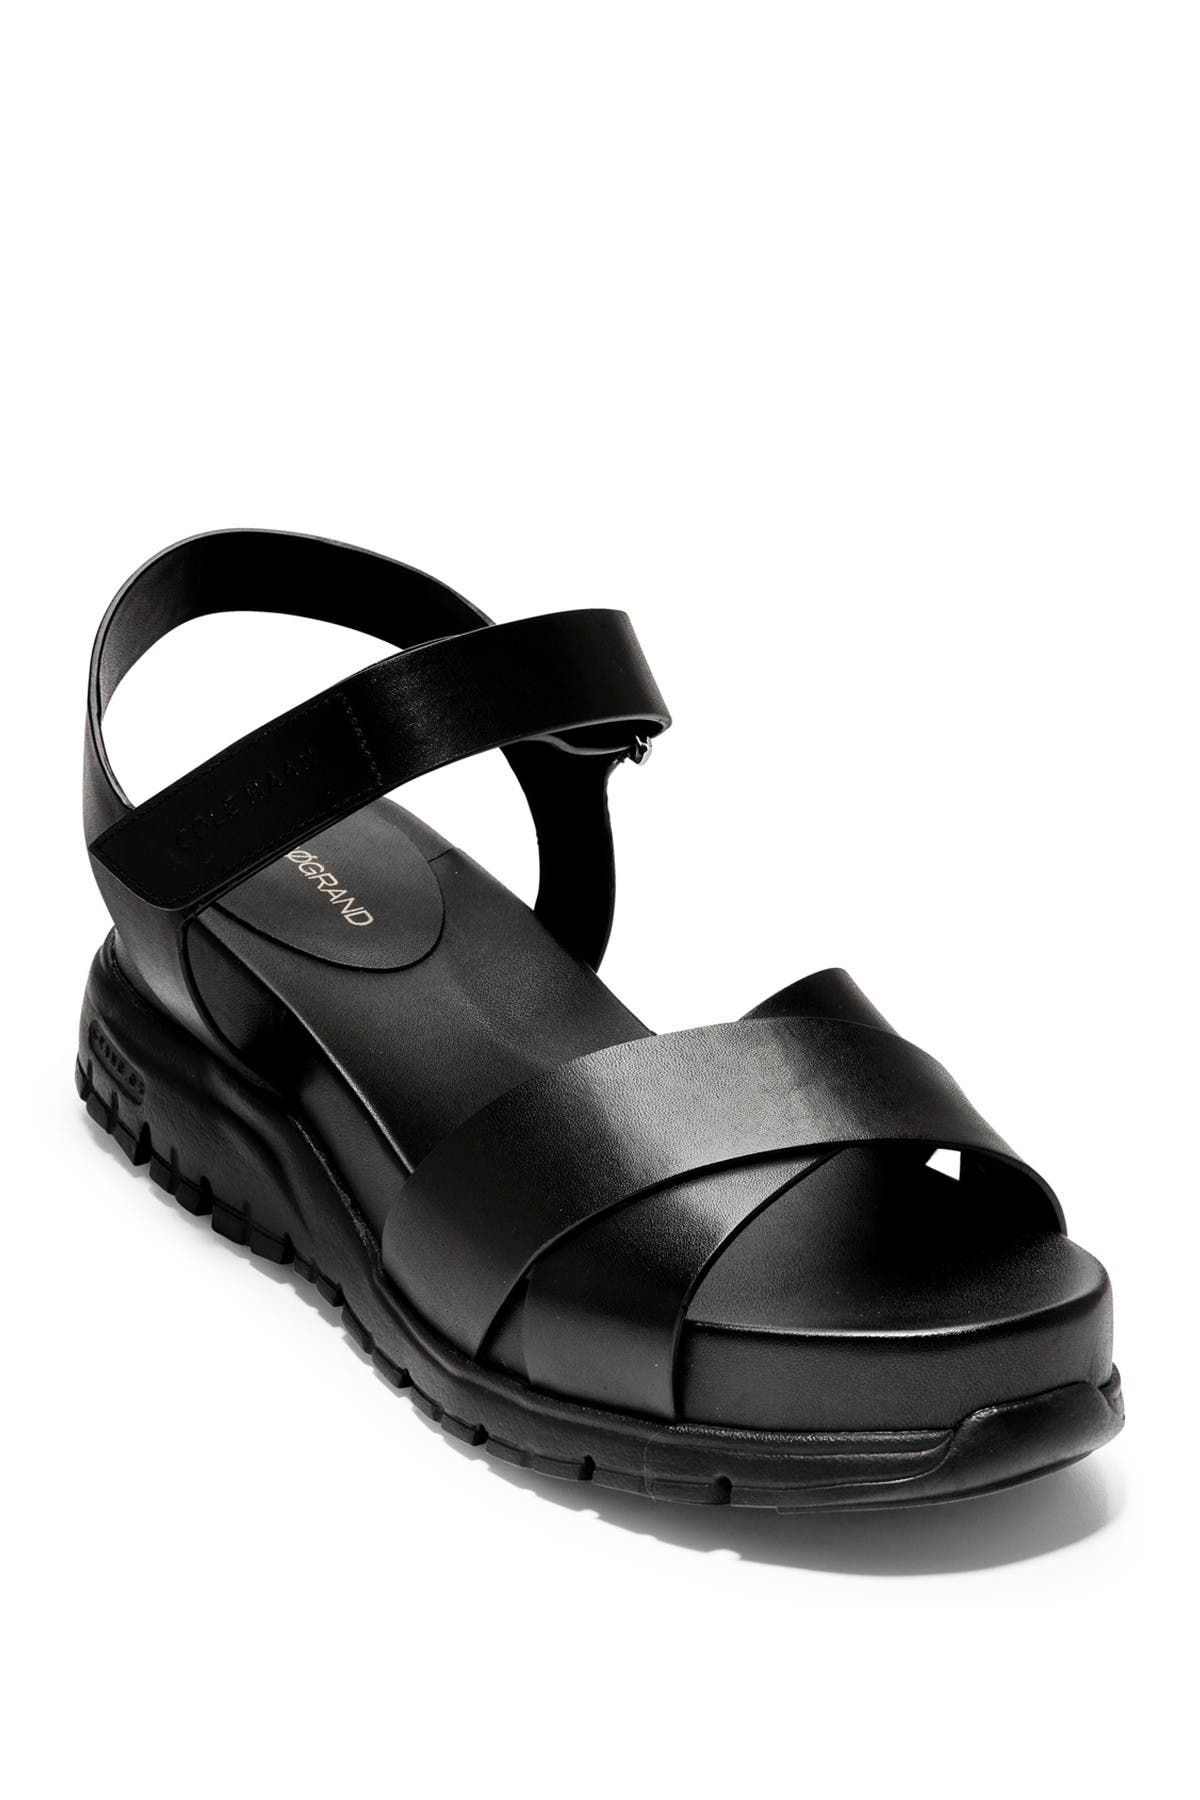 boys black slippers